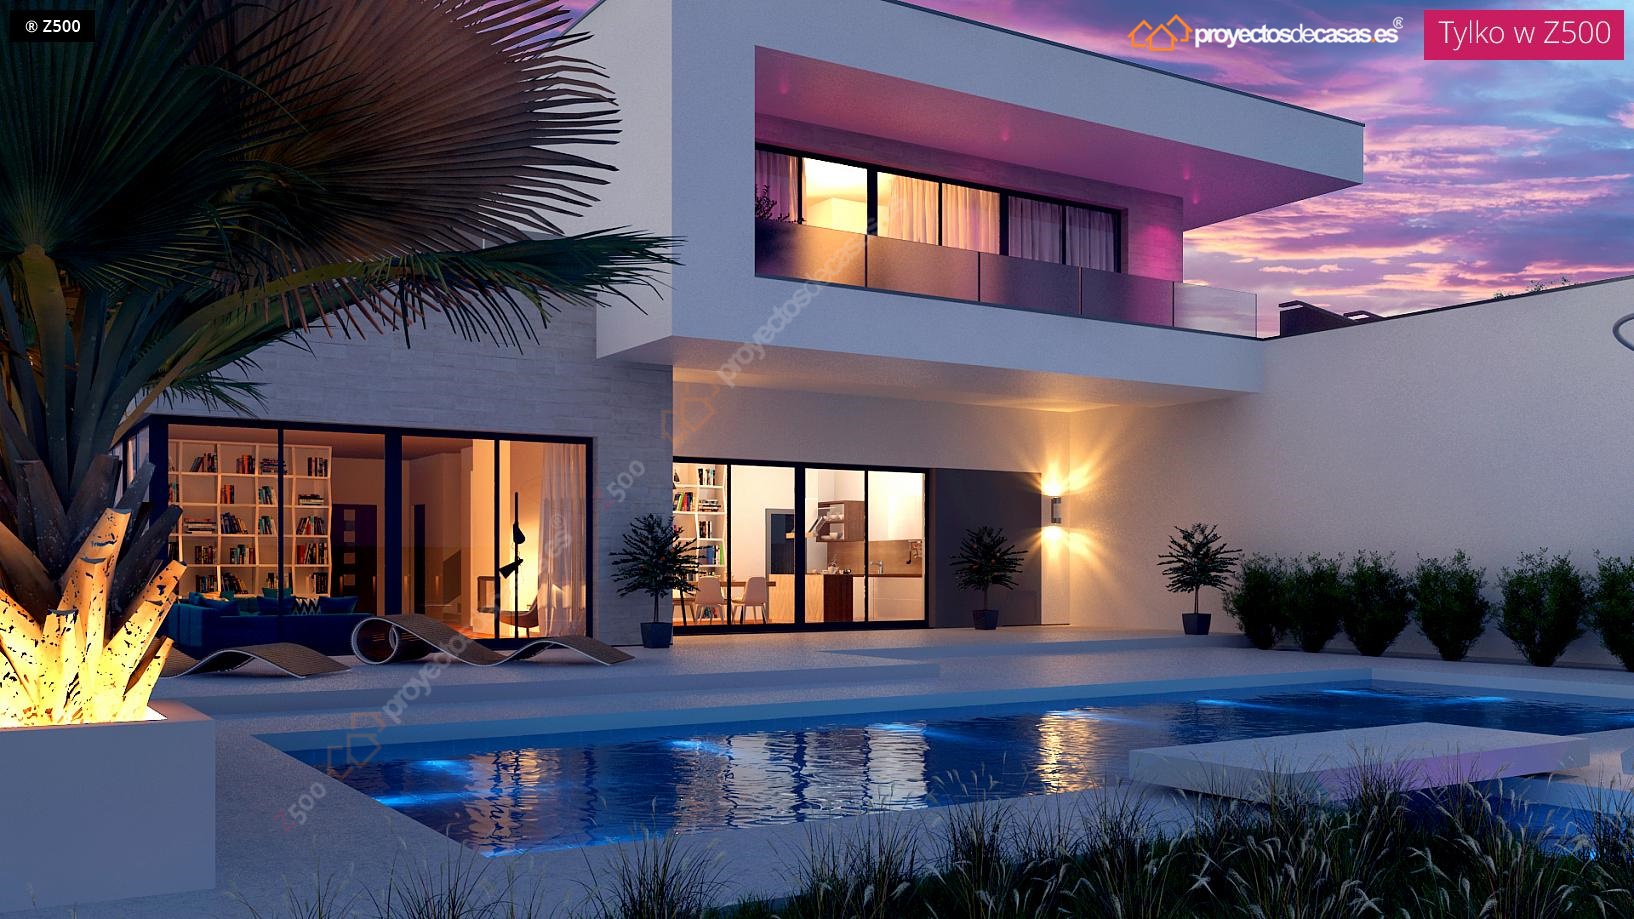 Proyectos de casas casa moderna con piscina for Casa moderna 80 mts